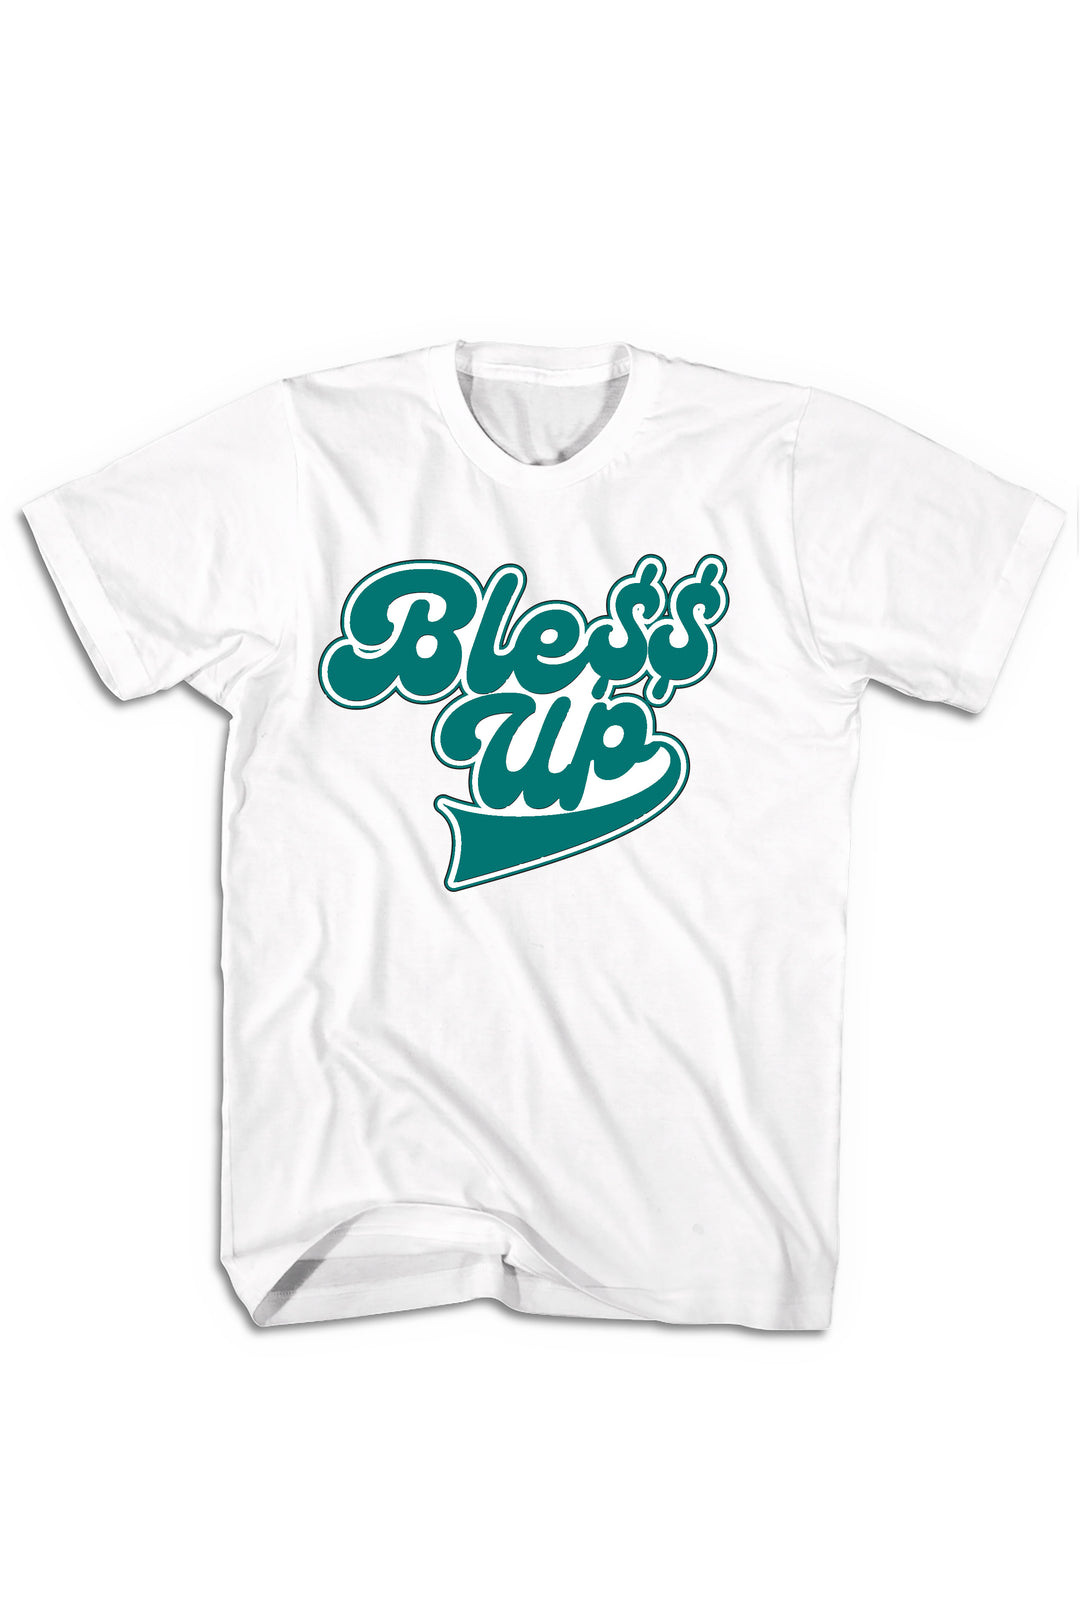 Bless Up Tee (White Logo) - Zamage